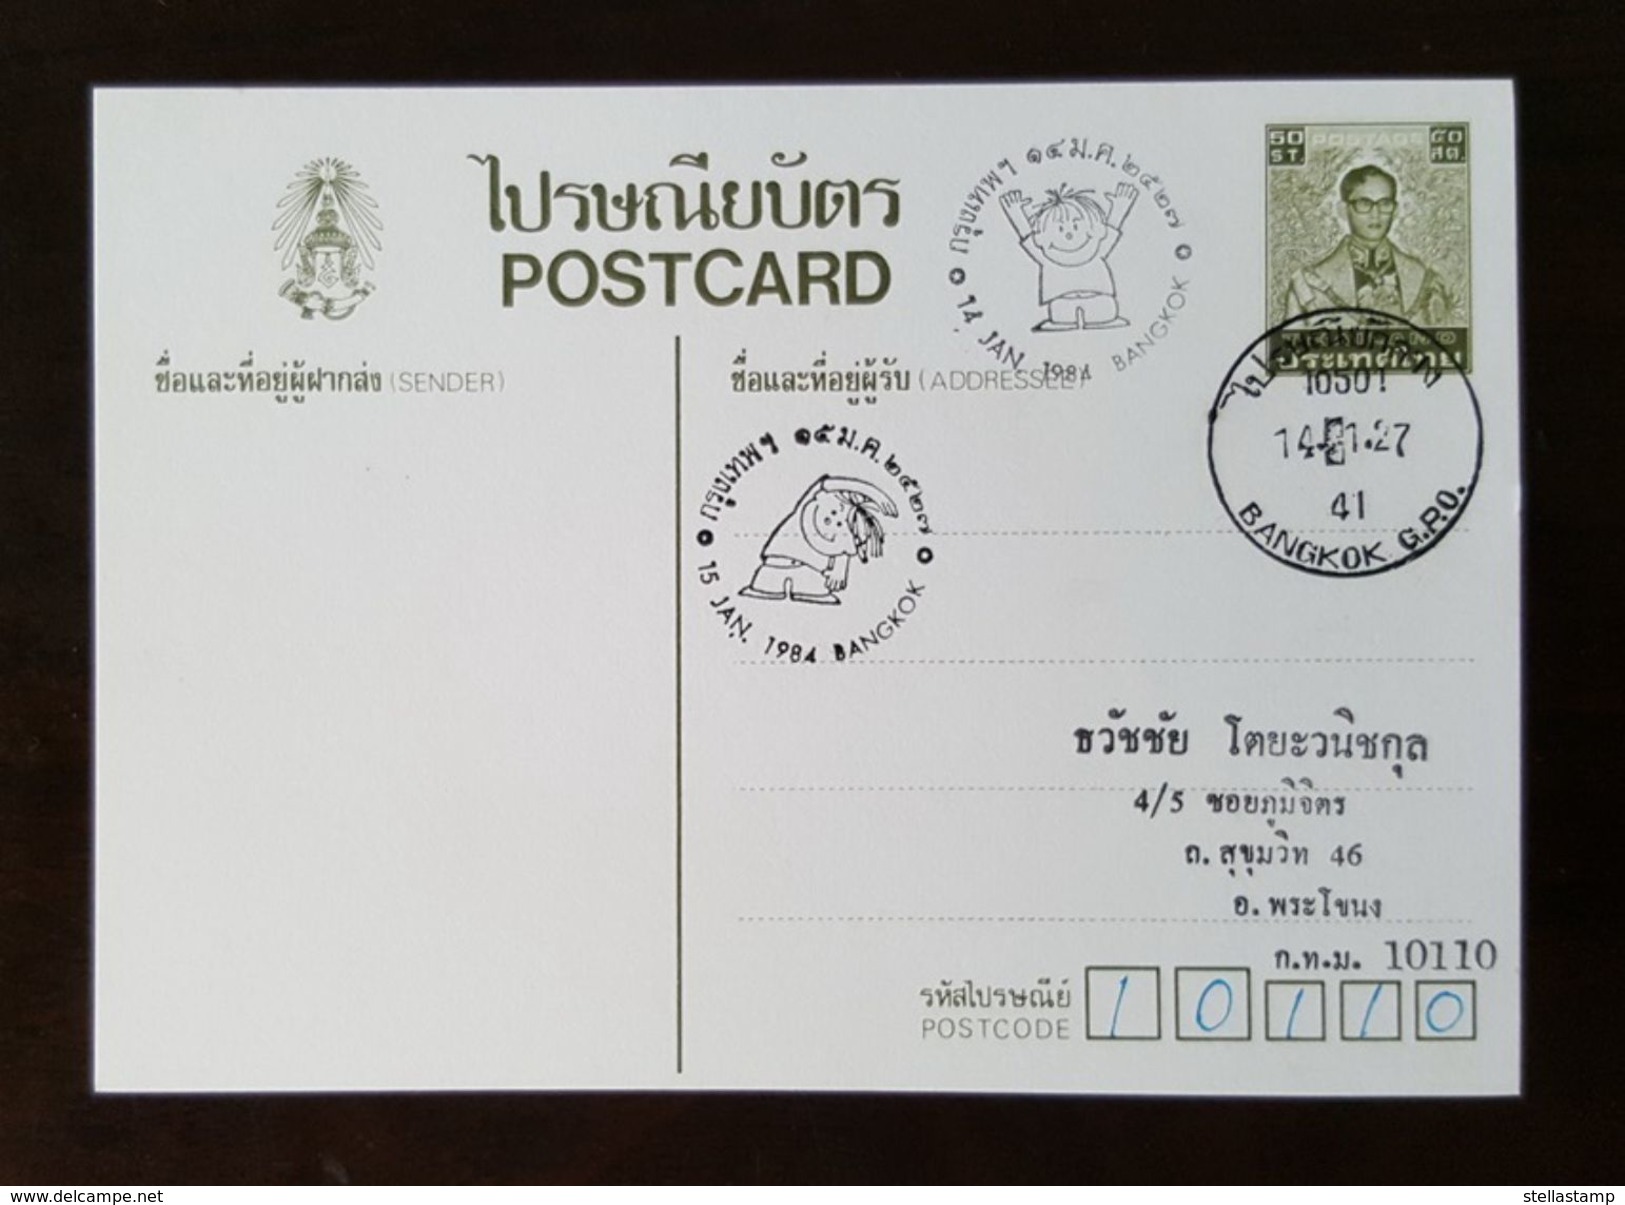 Thailand Postcard Stamp 1984 Children Day - Thailand